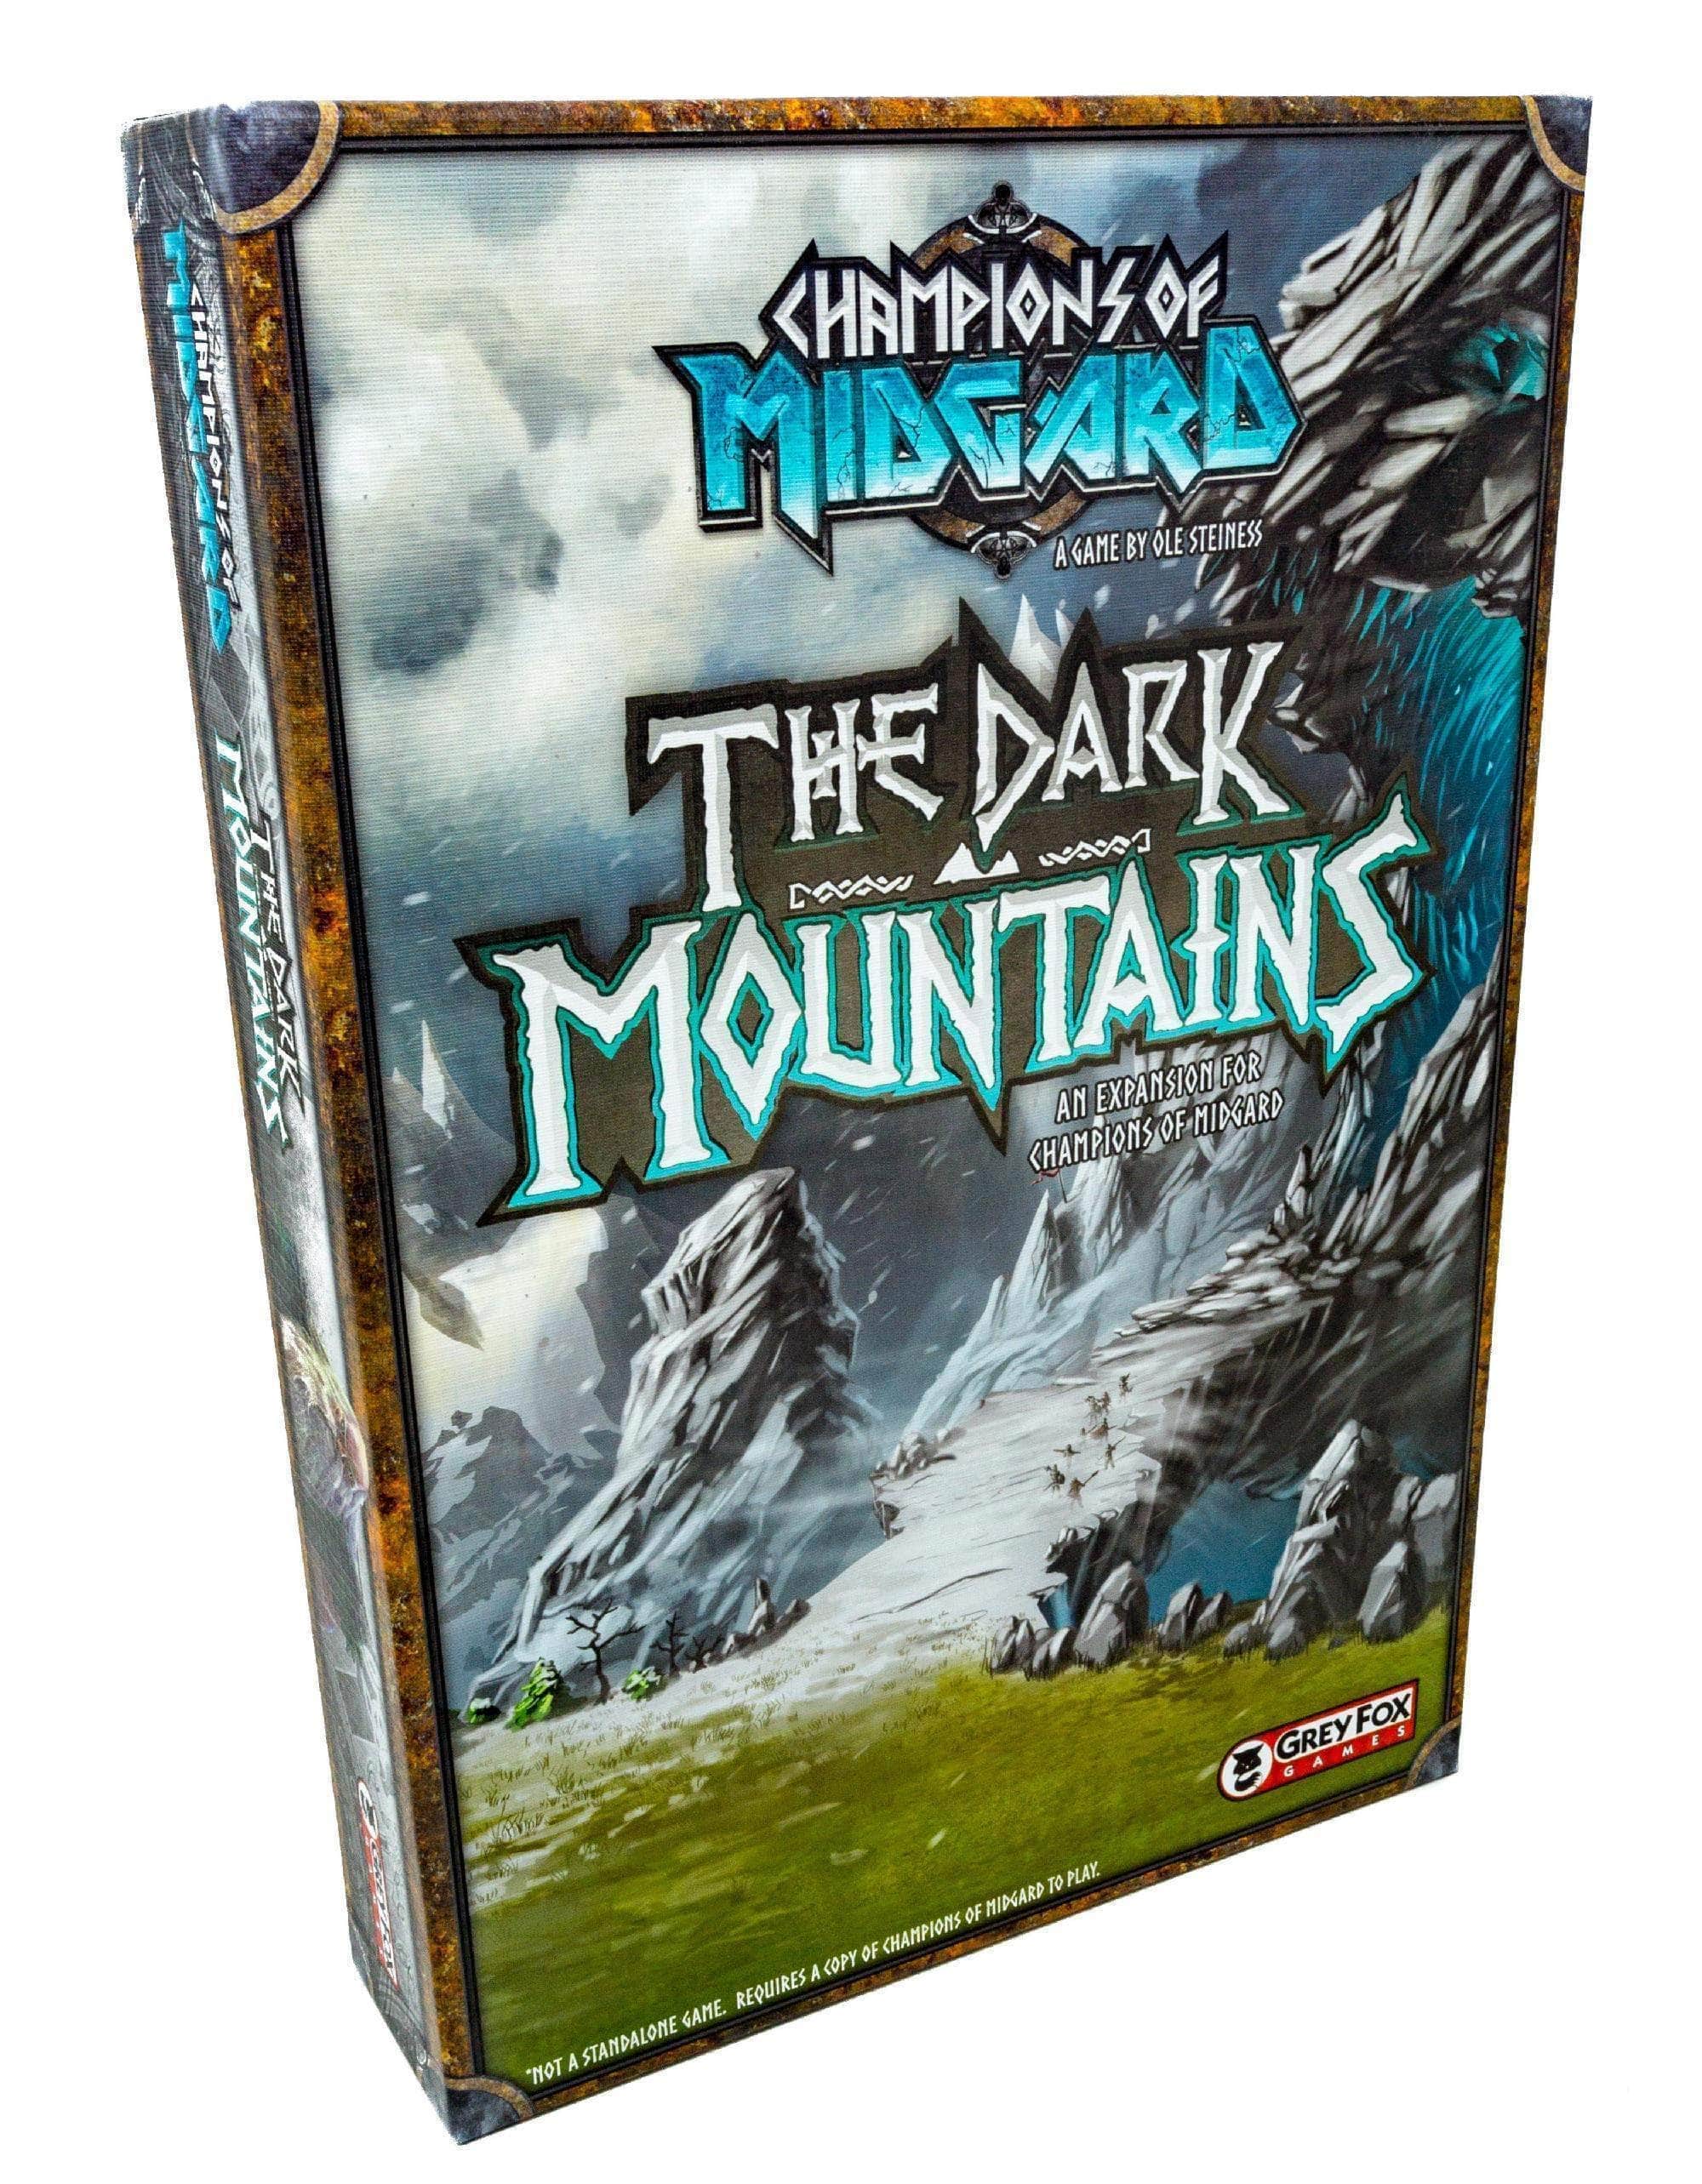 Campeões de Midgard: The Dark Mountain Expansion (Retail Pré-encomenda Edição) Expansão de jogo de tabuleiro de varejo Grey Fox Games 616909967469 KS000650Q